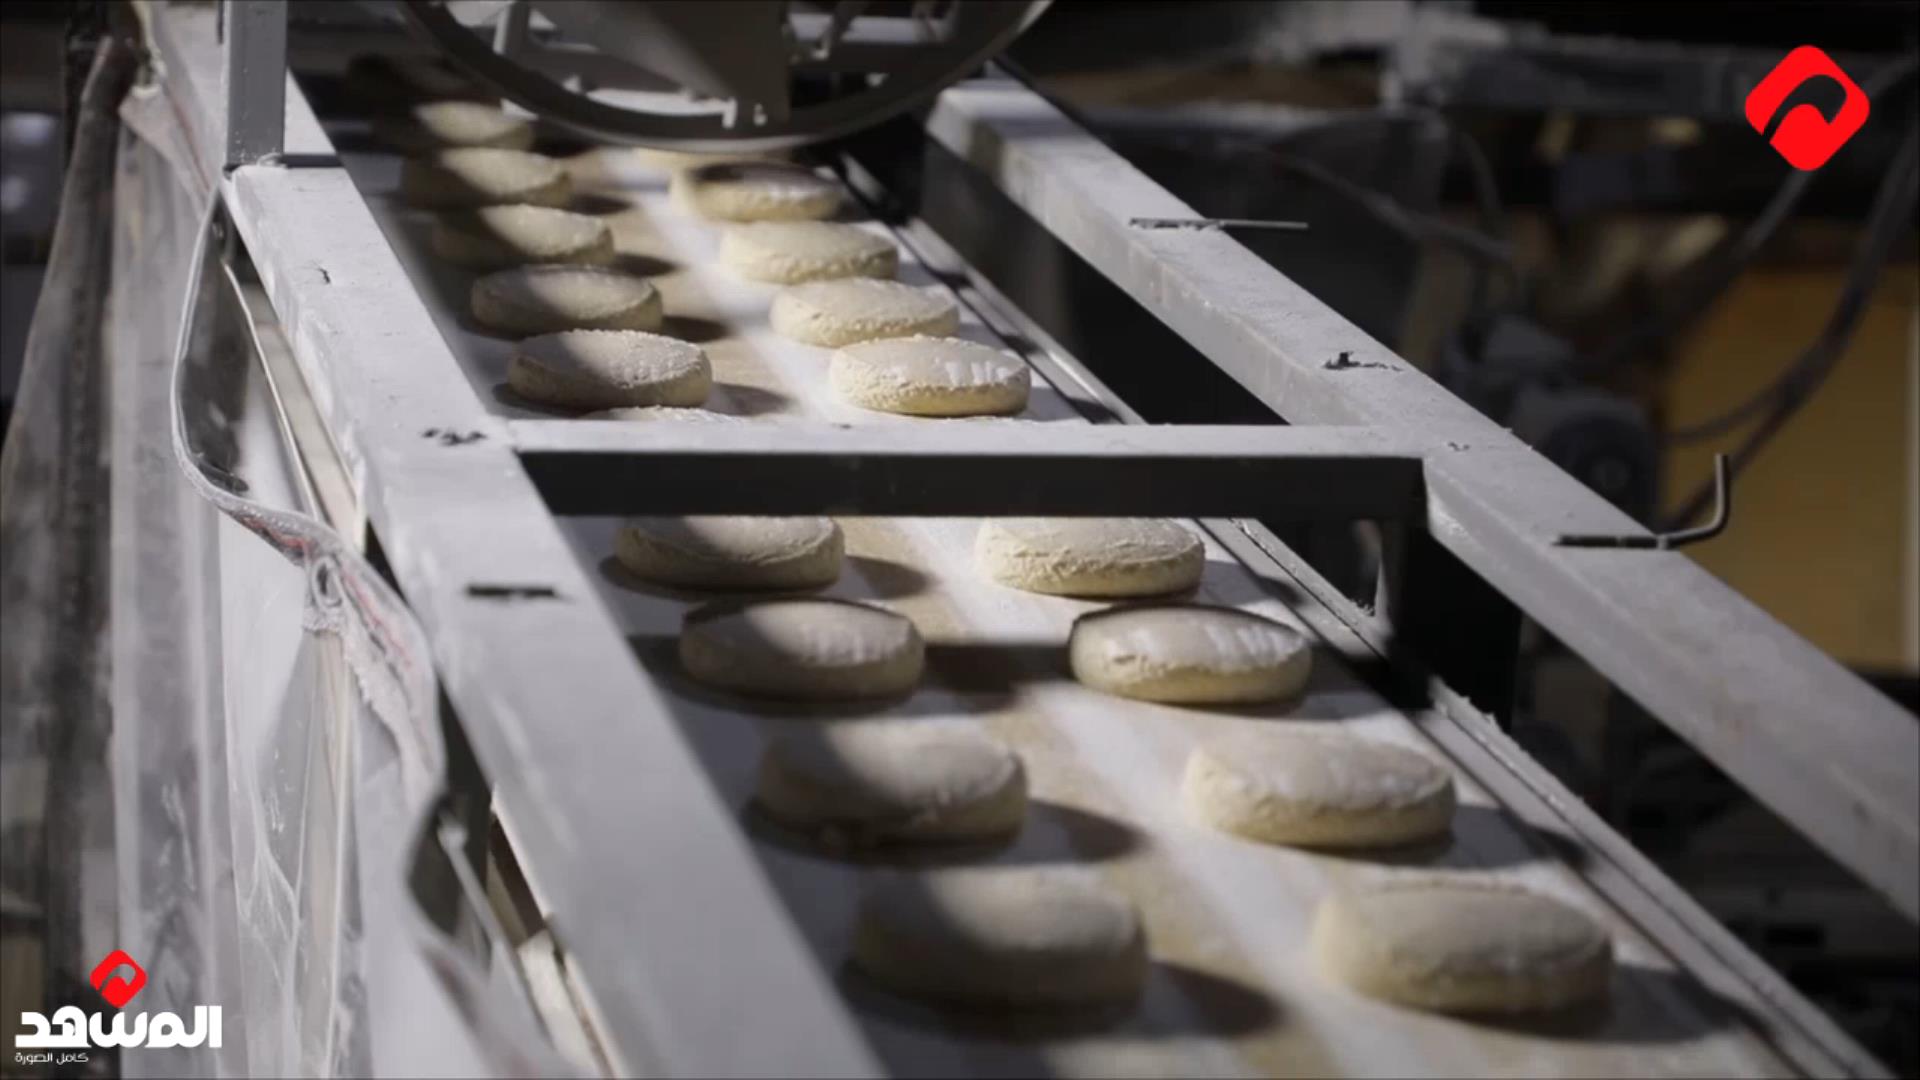 إنتاج سورية 5 ملايين ربطة من الخبز يومياً والبدء بتوسيع العمل على البطاقة الذكية من بداية تموز